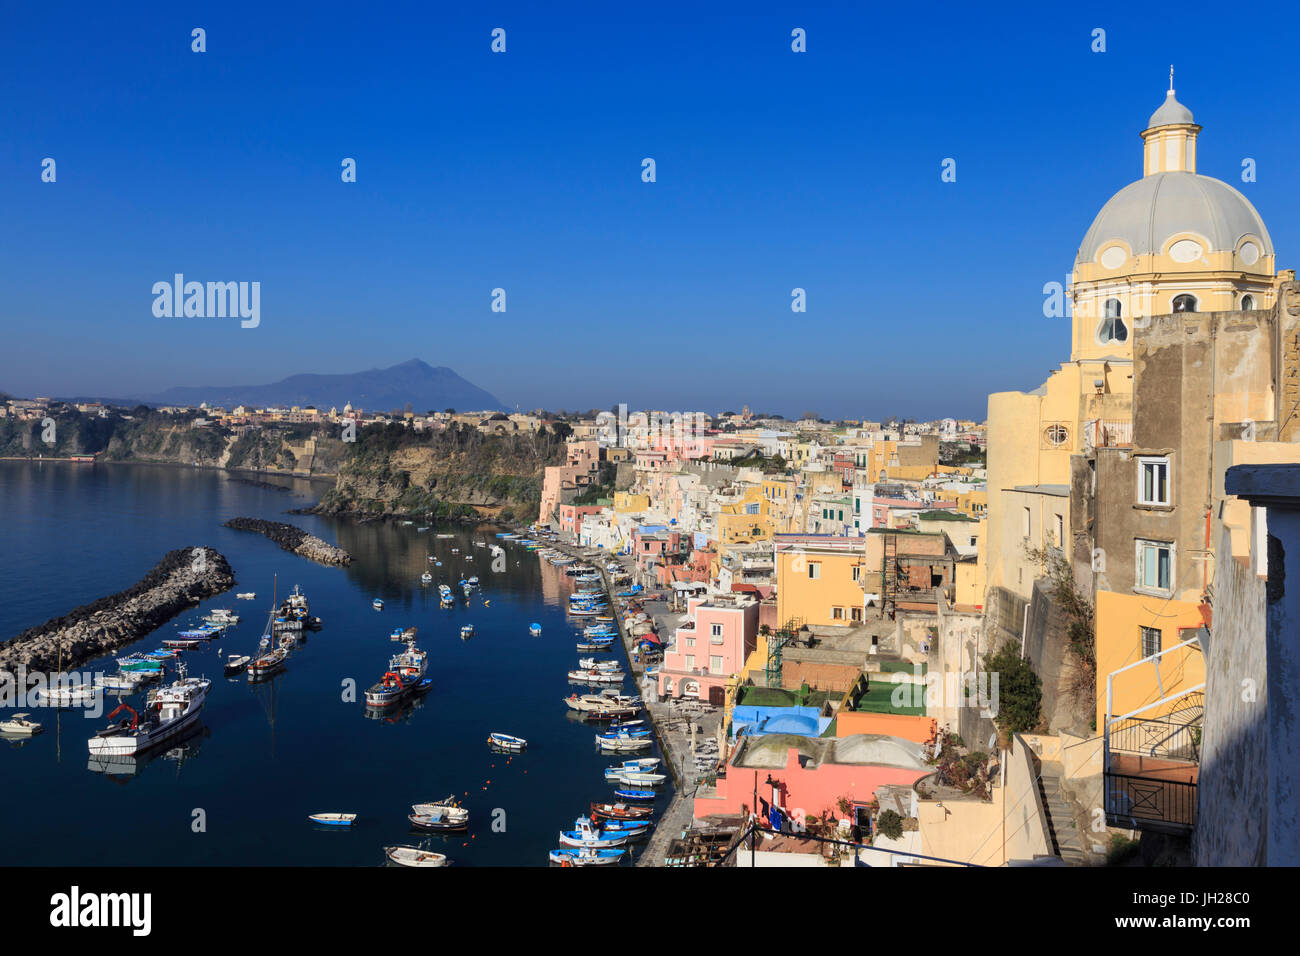 Marina Corricella, ziemlich Fischen Dorf, bunte Fischerhäuser, Boote und Kirche, Insel Procida, Neapel, Italien Stockfoto